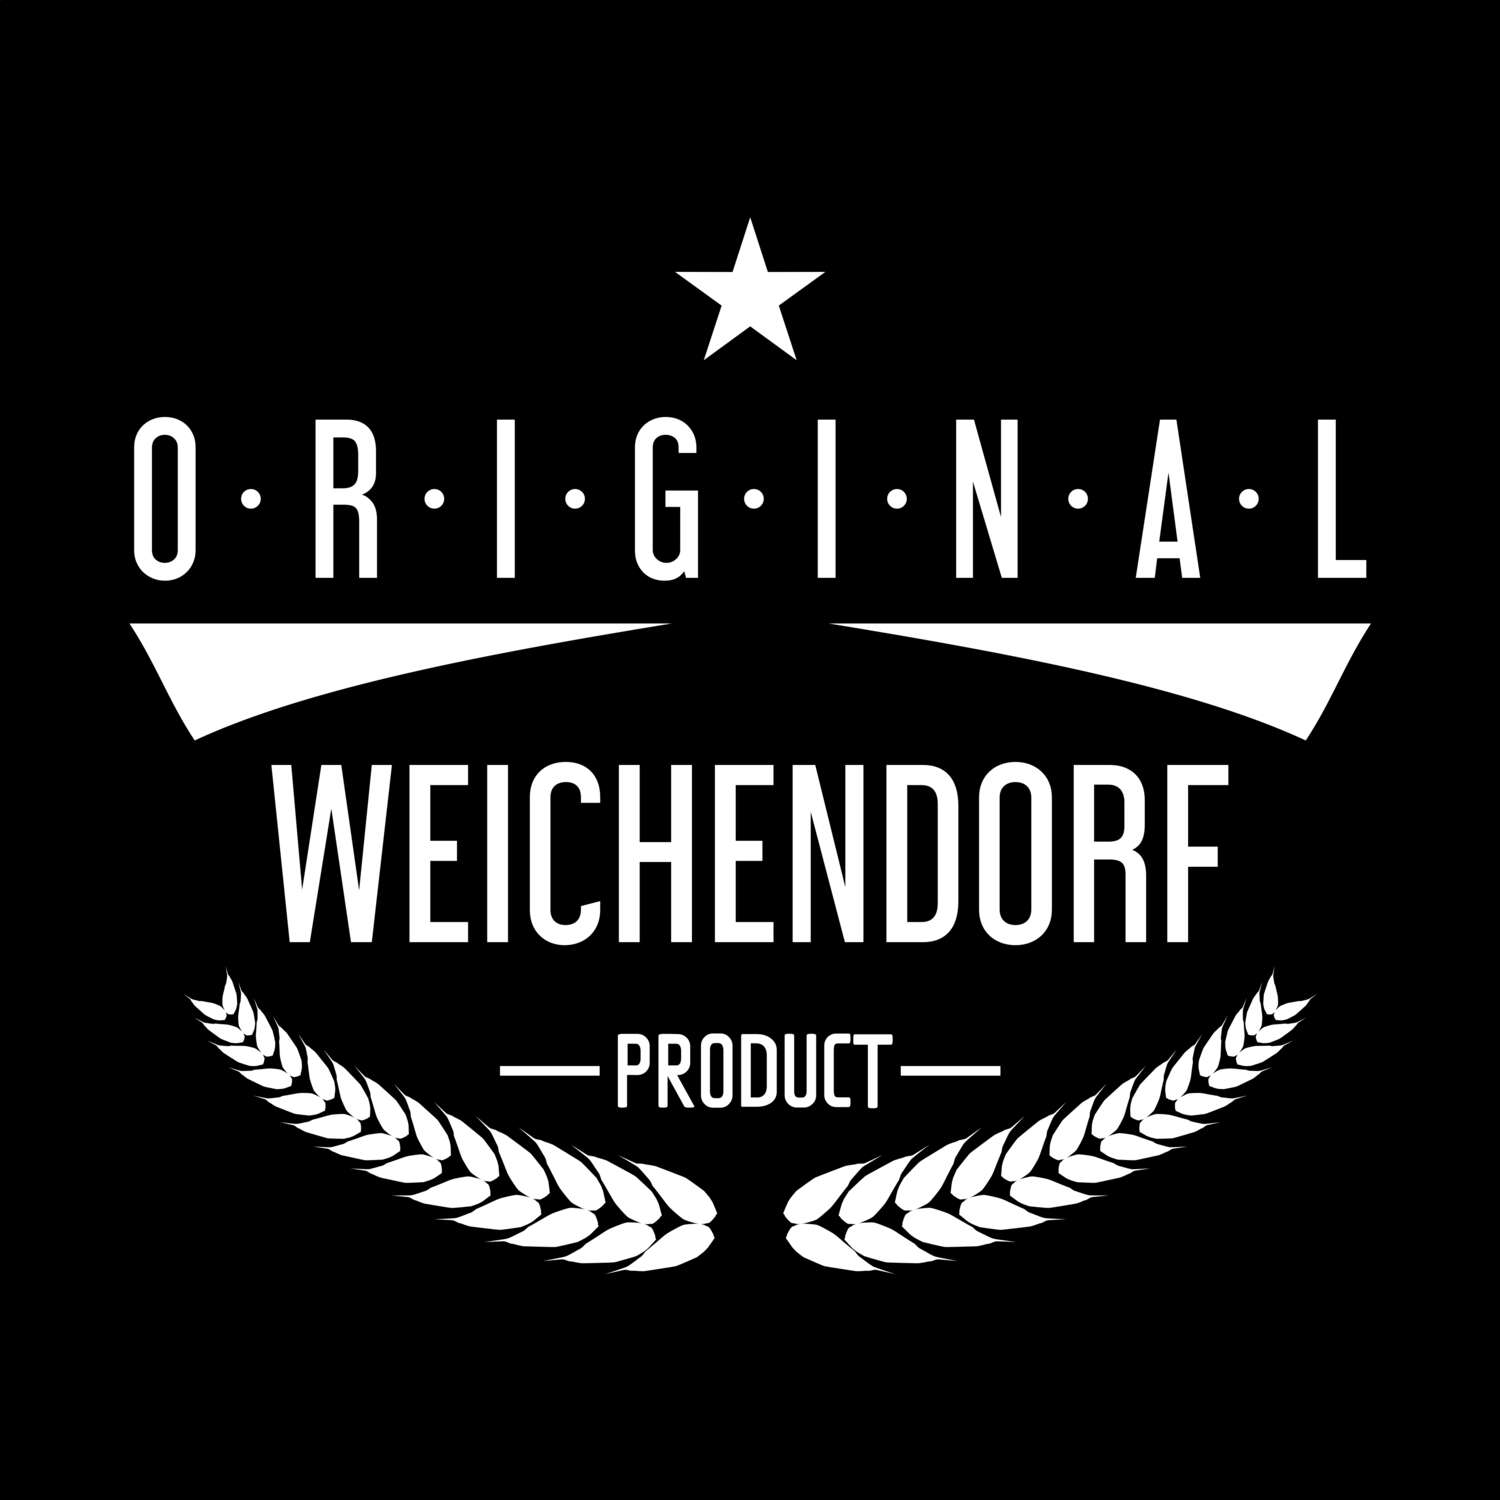 Weichendorf T-Shirt »Original Product«